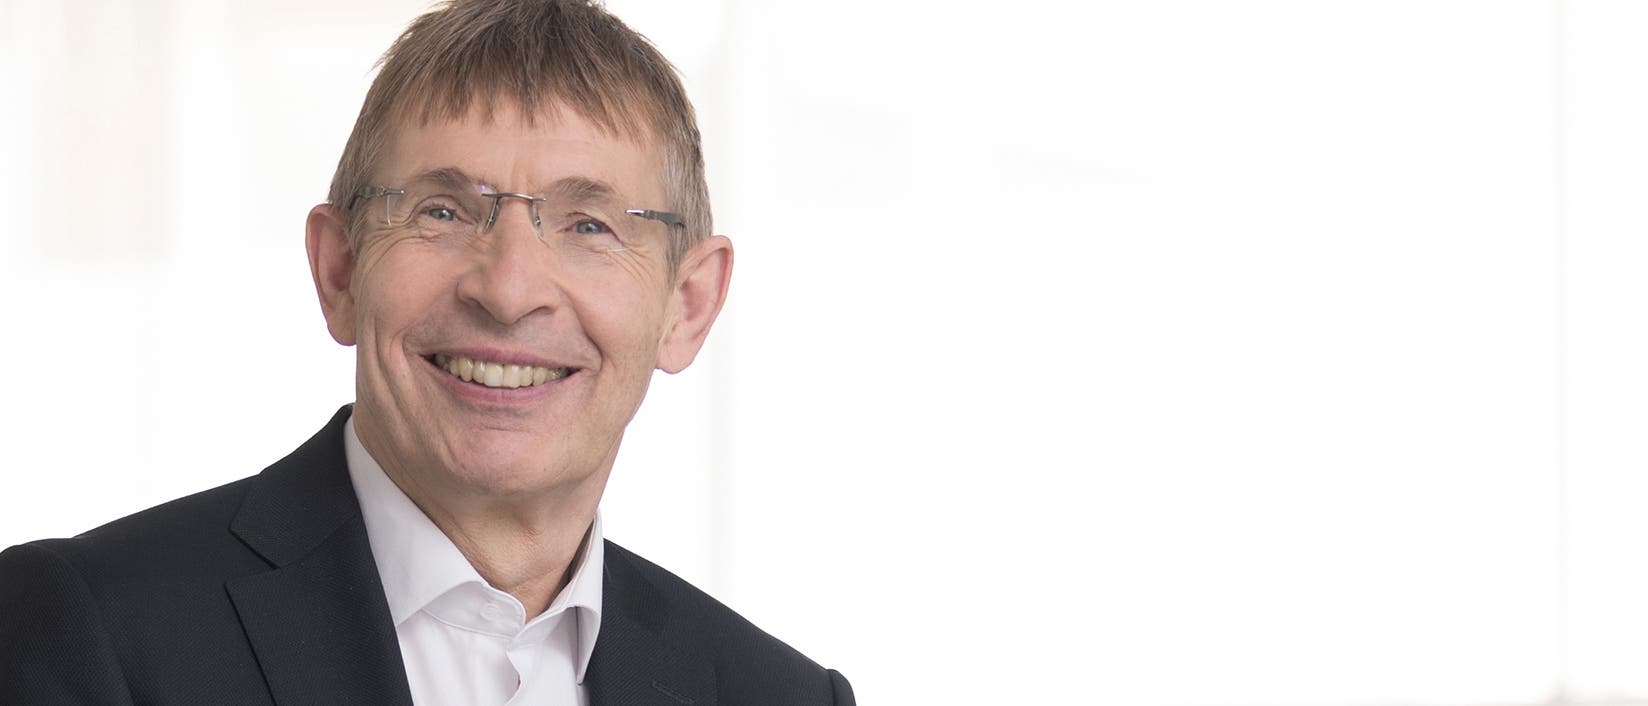 Klaus Cichutek ist Präsident des Paul-Ehrlich-Instituts und außerplanmäßiger Professor für Biochemie an der Johann Wolfgang Goethe-Universität in Frankfurt am Main. Er forscht über biomedizinische Arzneimittel, Gentherapie und Retrovirologie mit dem Schwerpunkt der HIV/SIV-­Immunpathogenese und Aids.